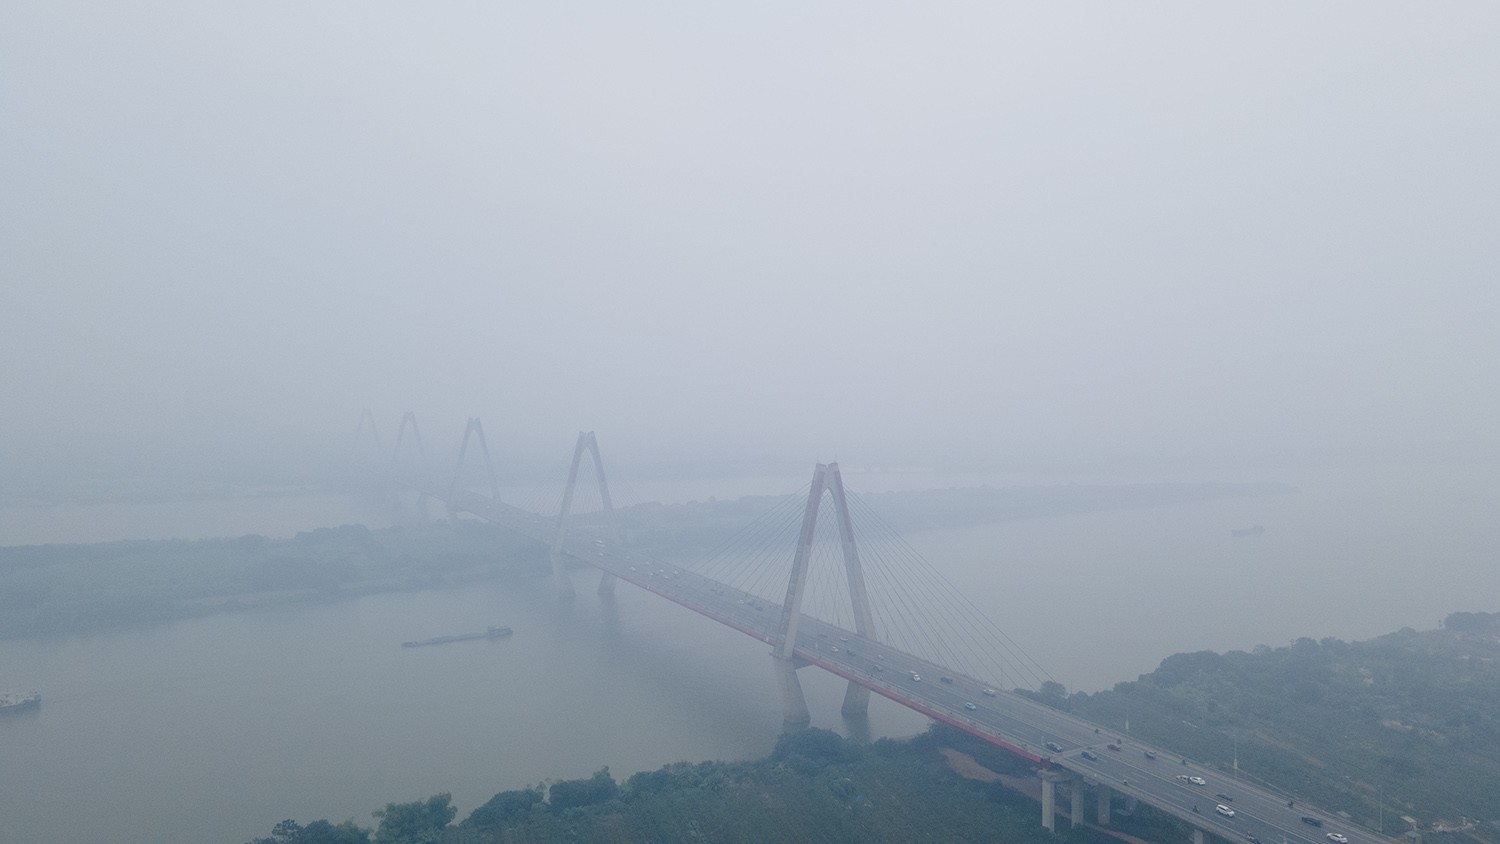 Trung tâm Hà Nội chìm trong sương mù dày đặc, chất lượng không khí nhiều nơi ở “mức đỏ” - 10